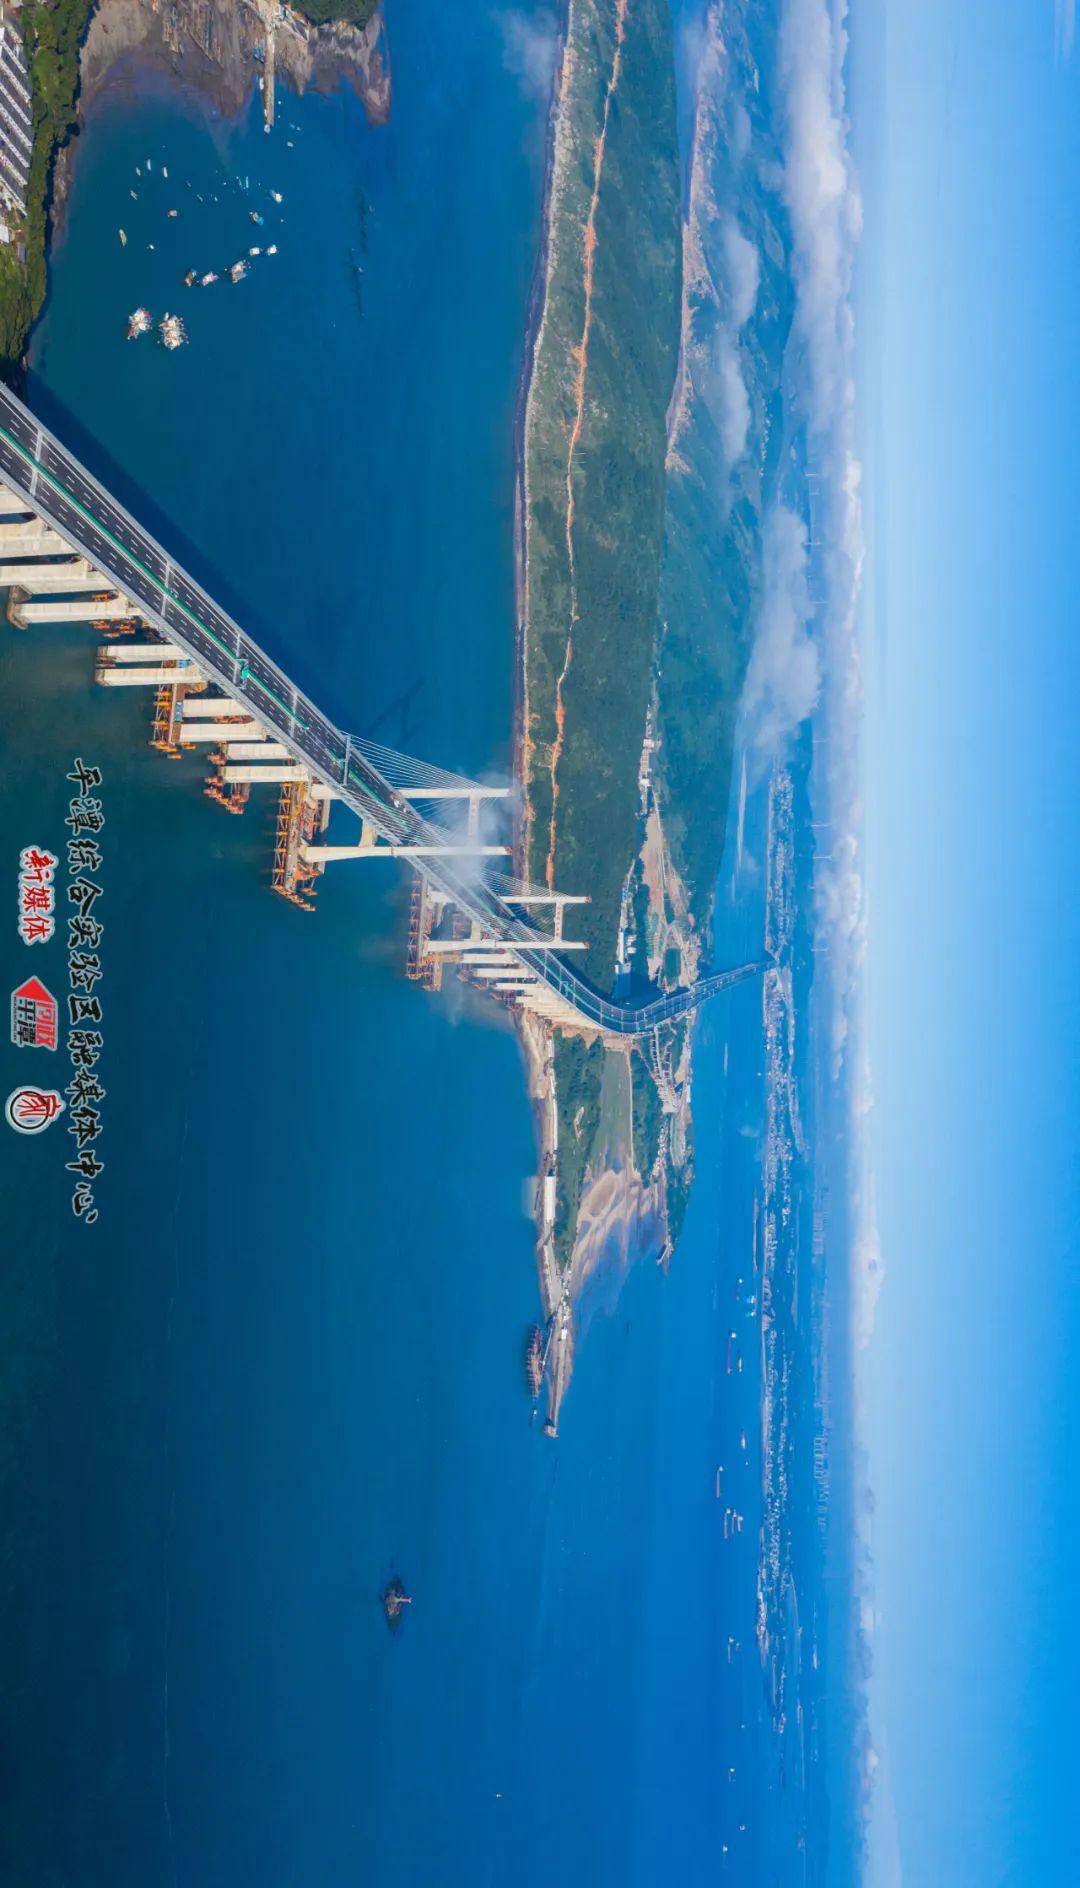 【如此震撼】带您俯瞰,世界最长平潭跨海公铁两用大桥